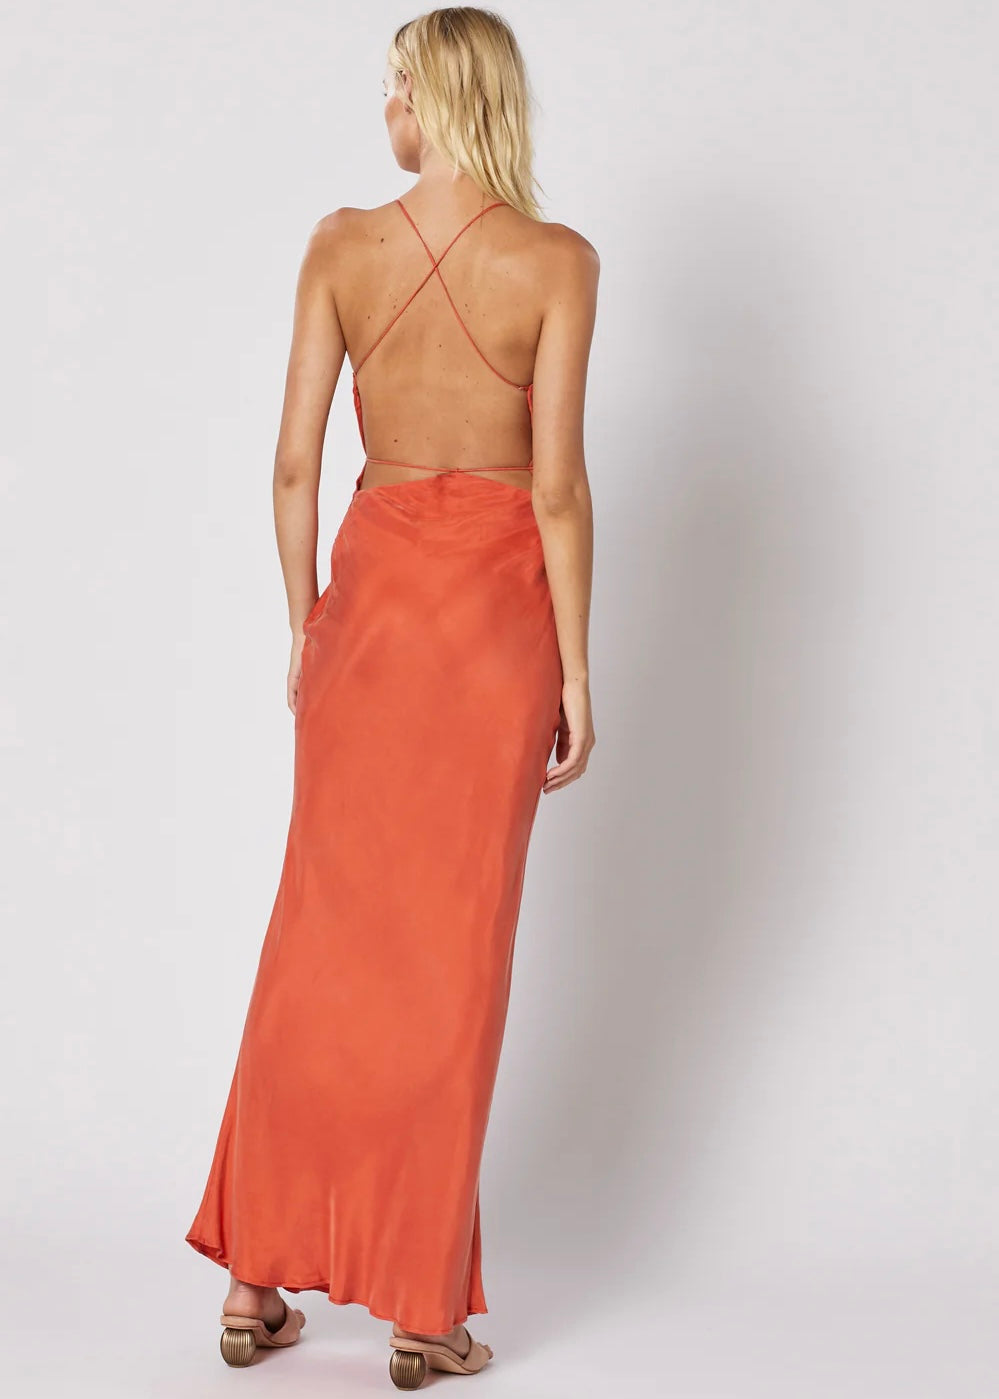 Seraphina Maxi Dress Size 8-10